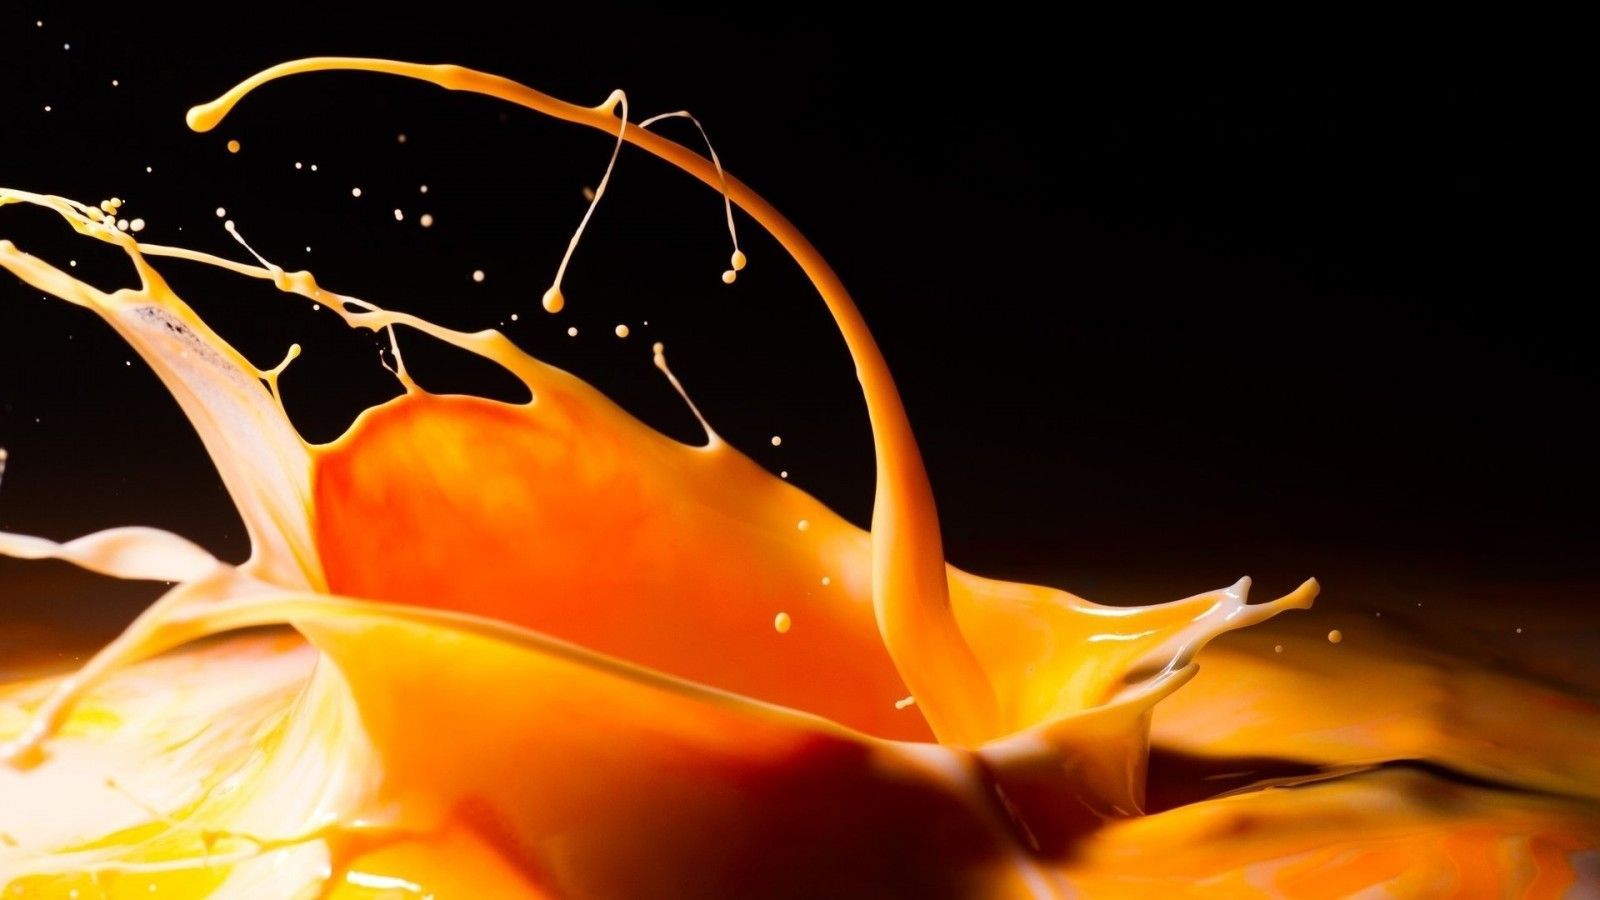 A close up of orange juice spilling out - Dark orange